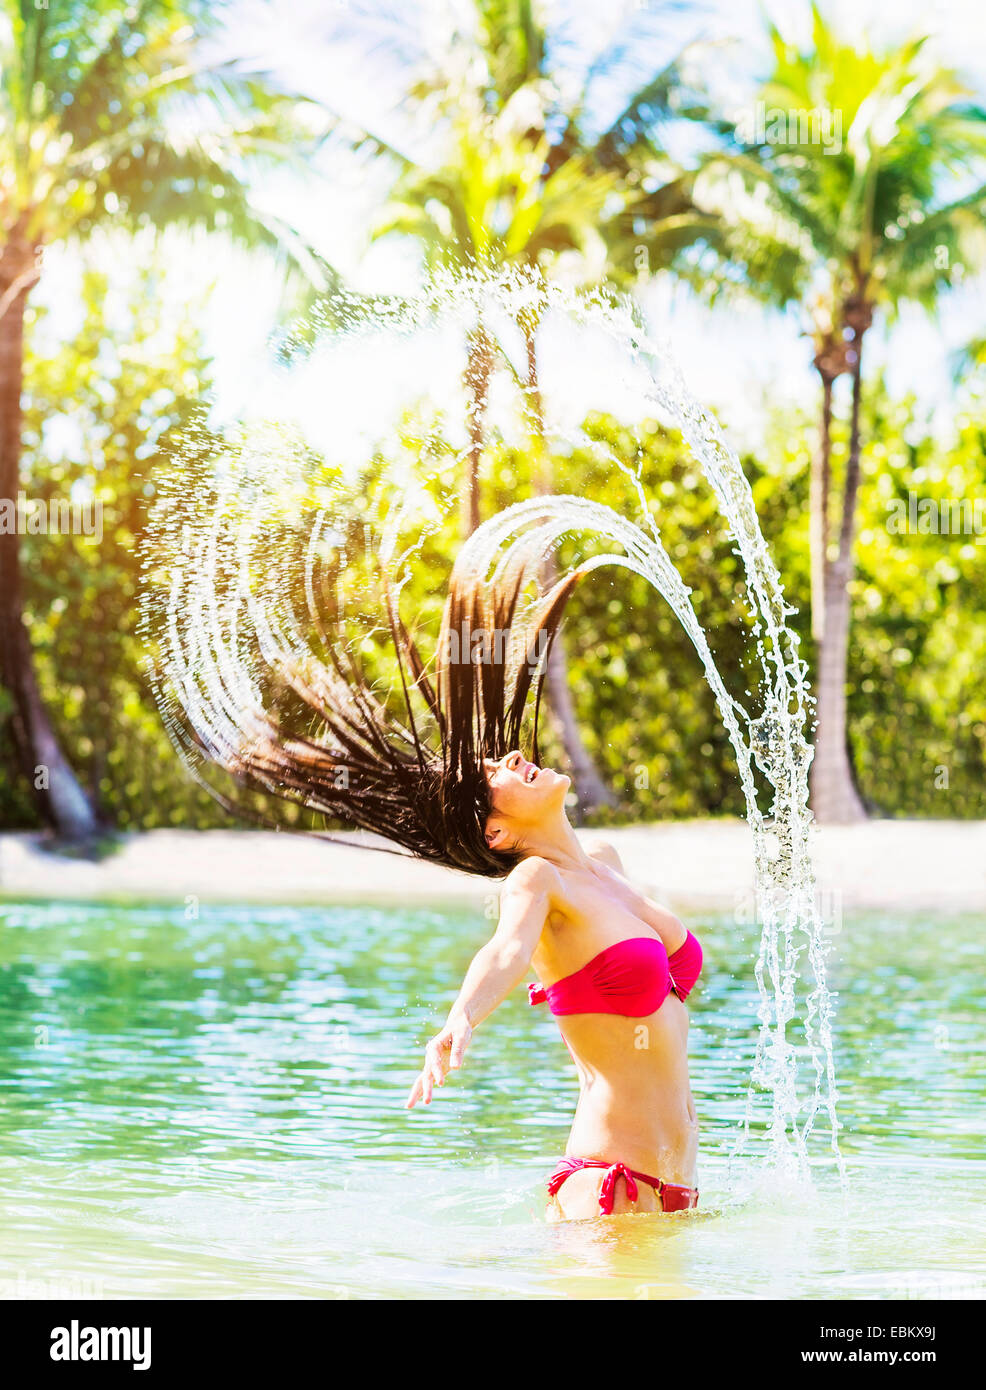 USA, Floride, Jupiter, Portrait of young woman wearing bikini tossing sèche et aux projections d'eau dans le lagon tropical Banque D'Images